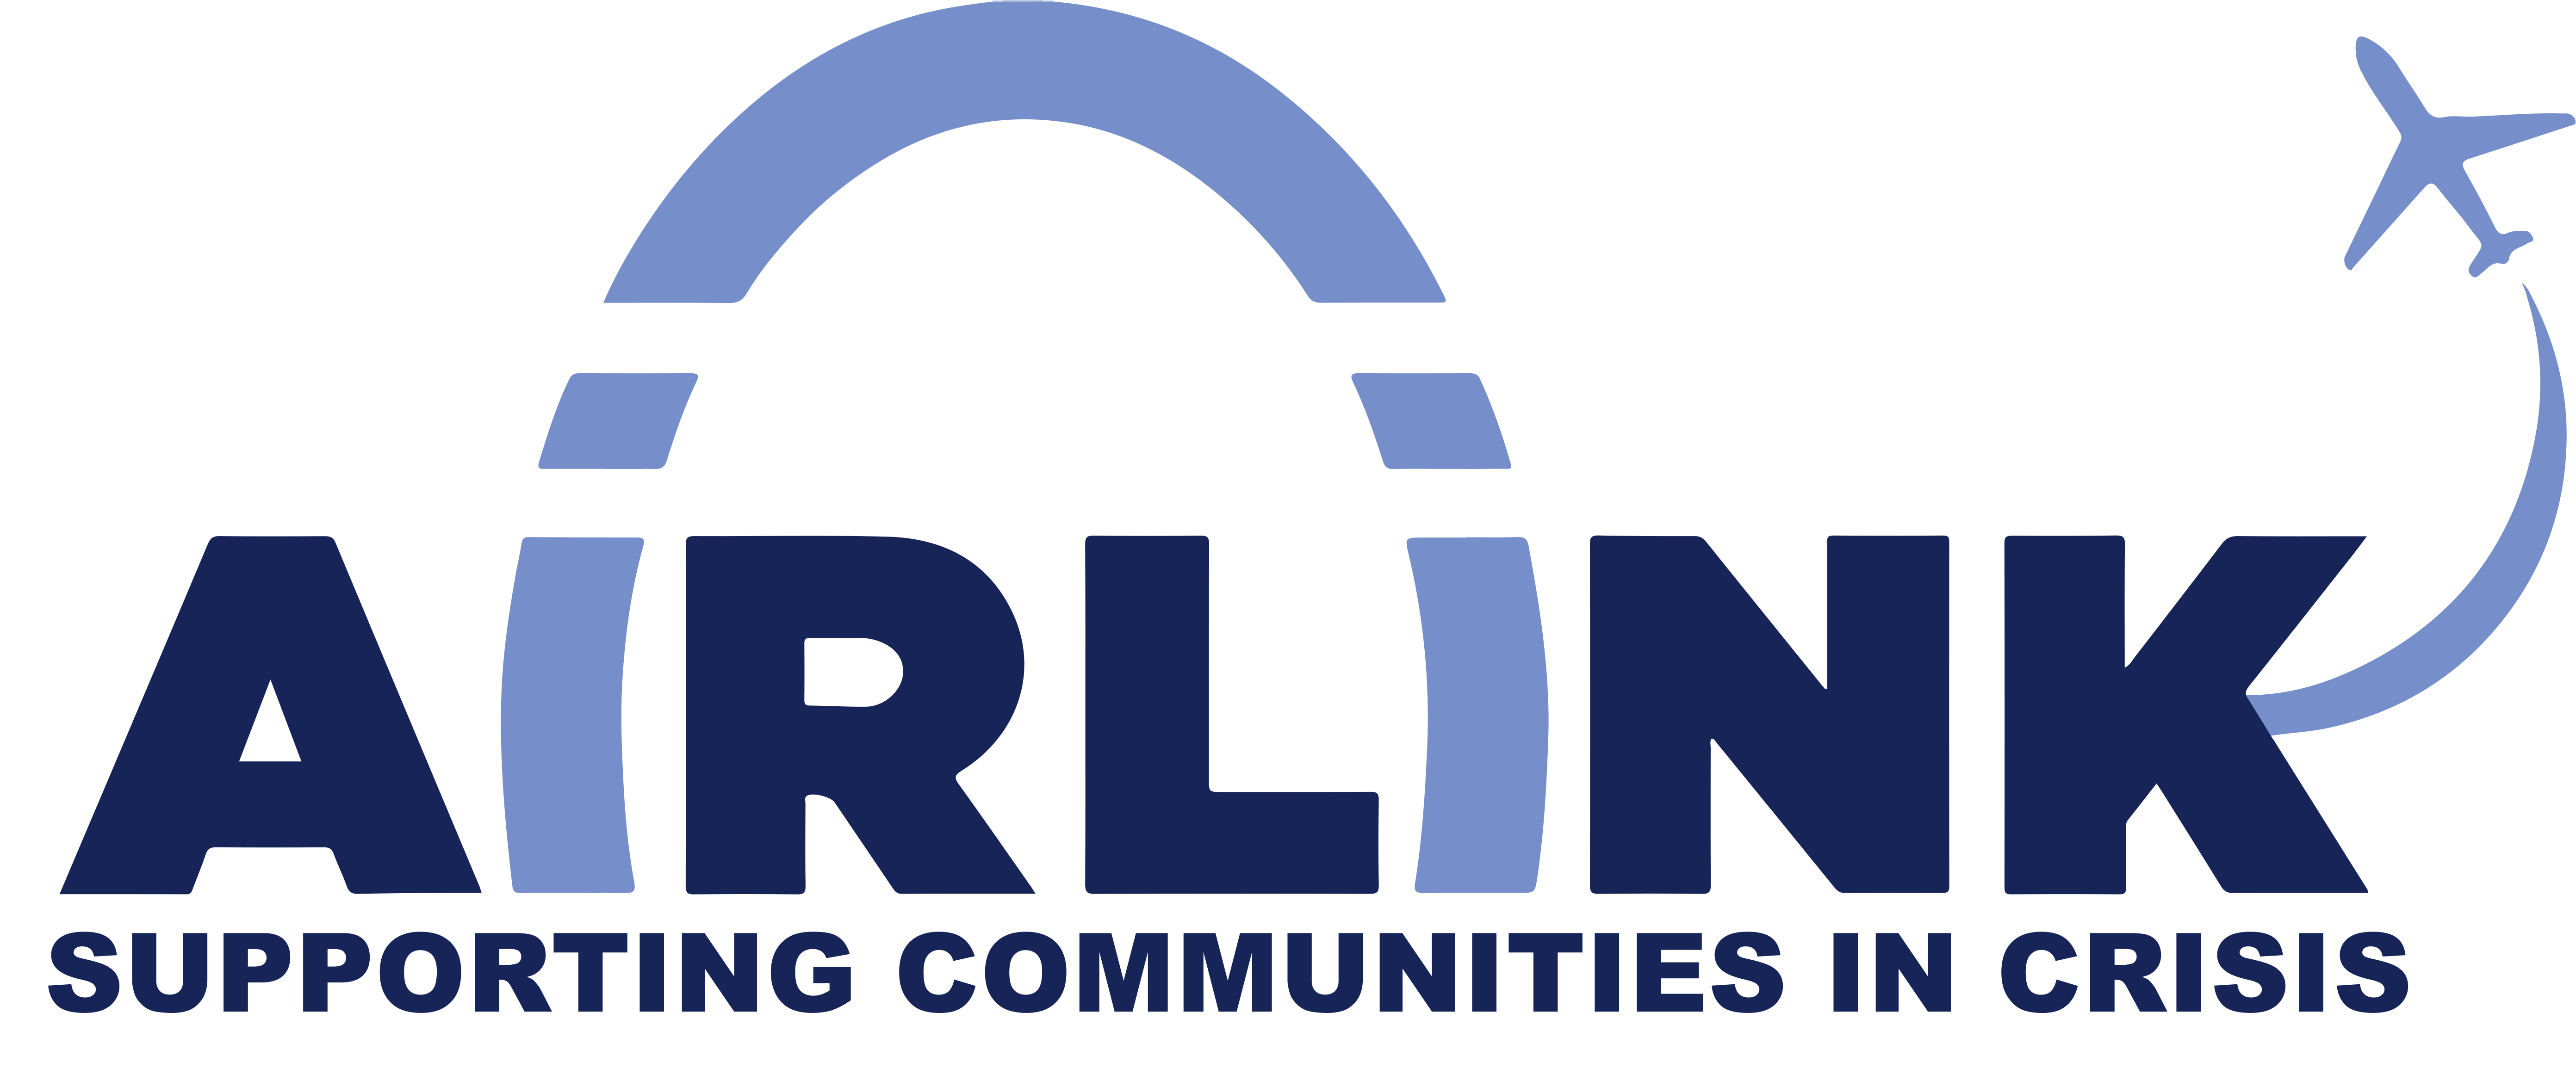 Airlink logo